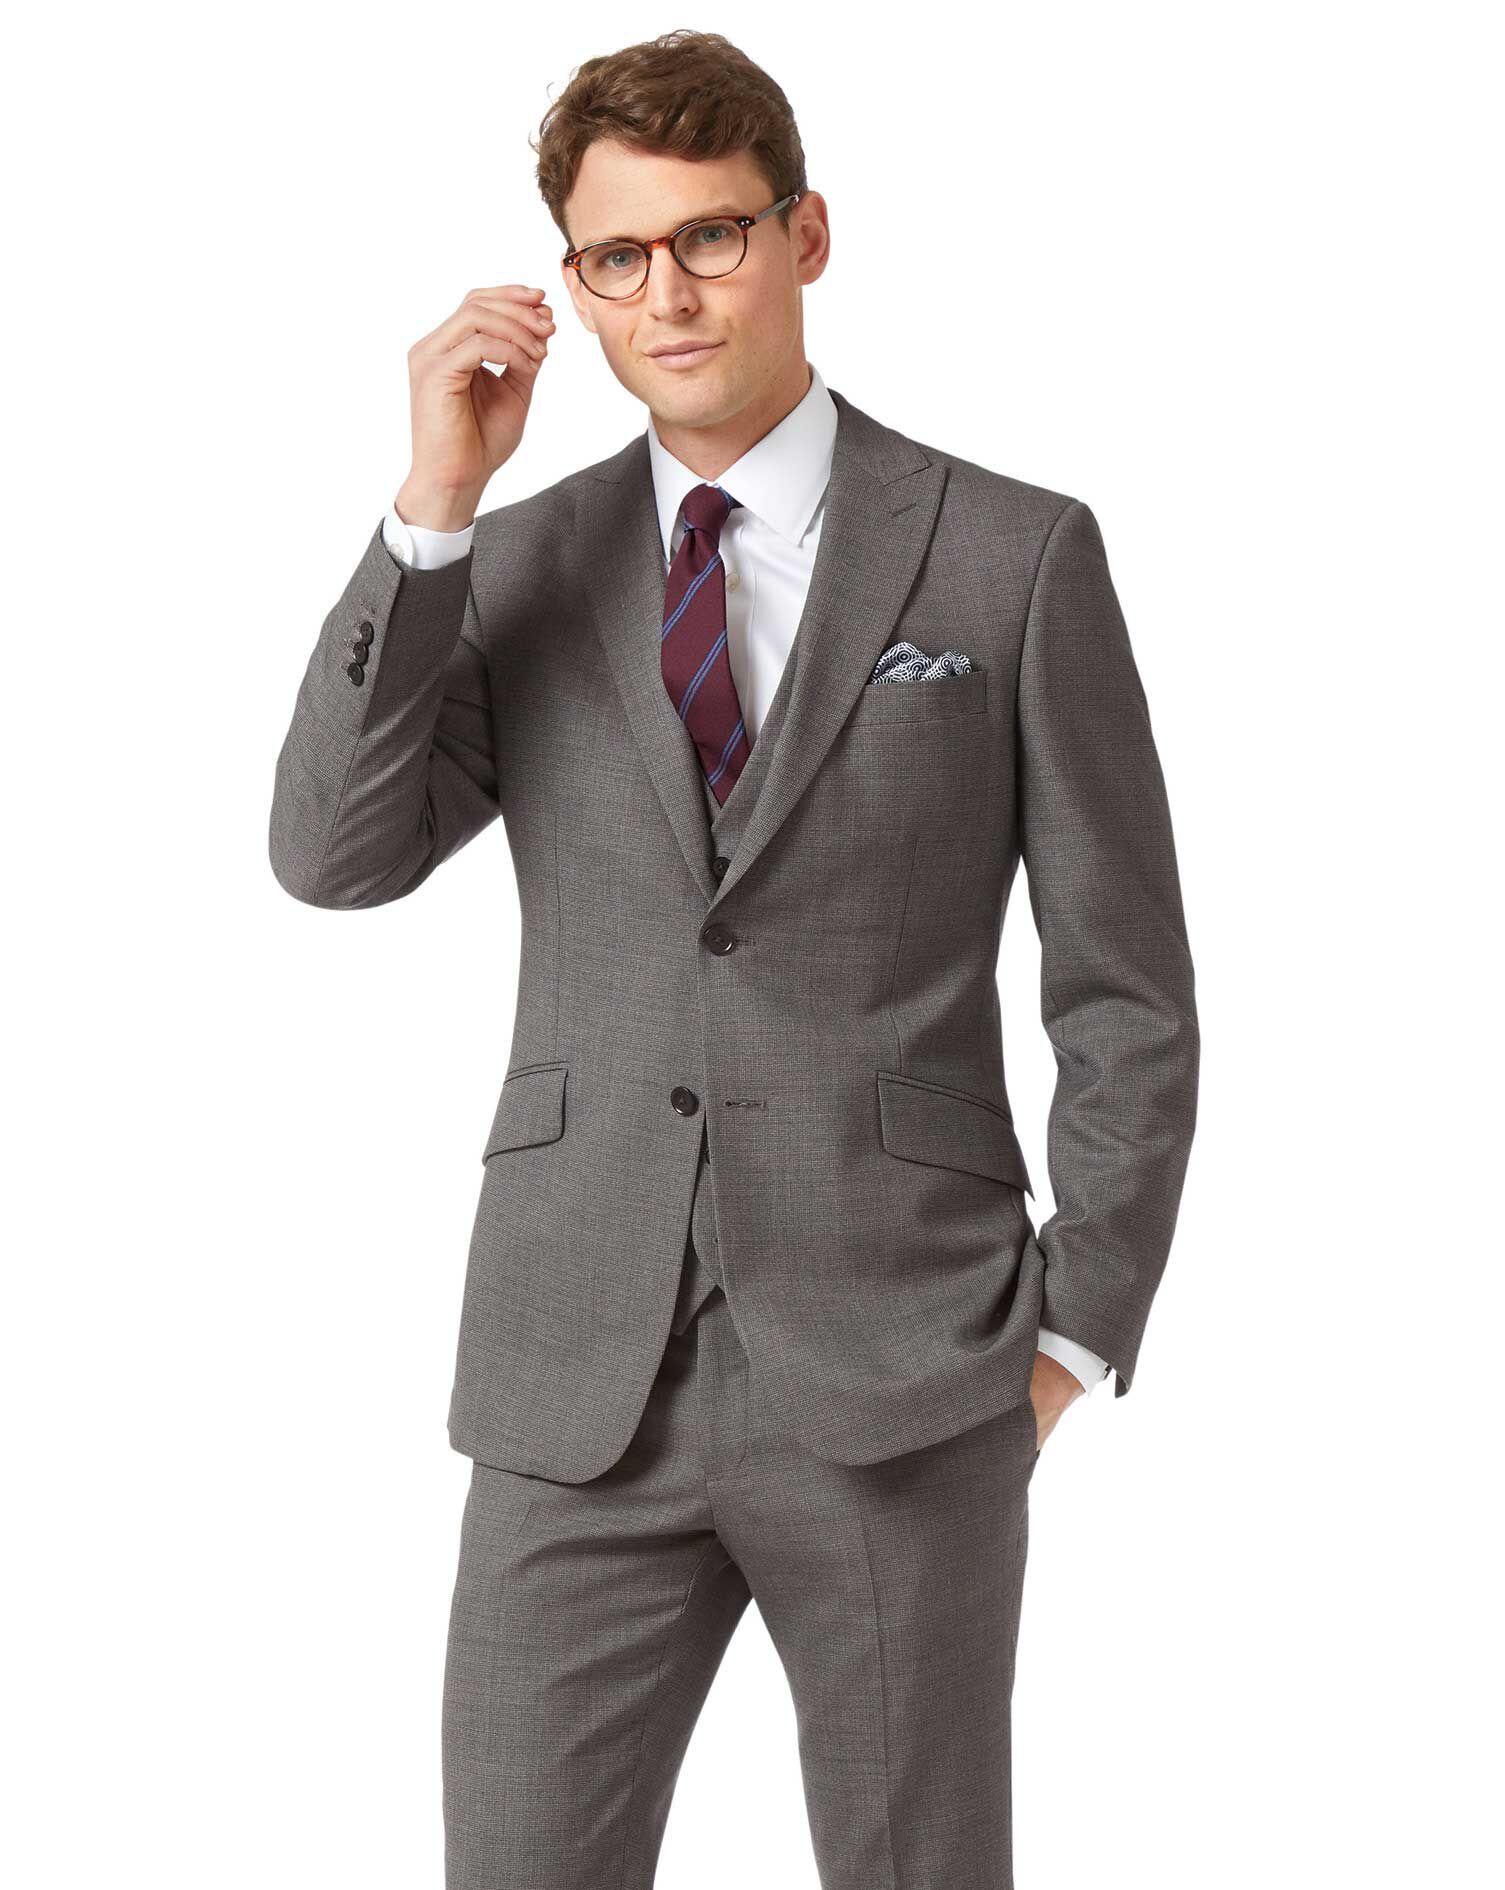 formal business suit